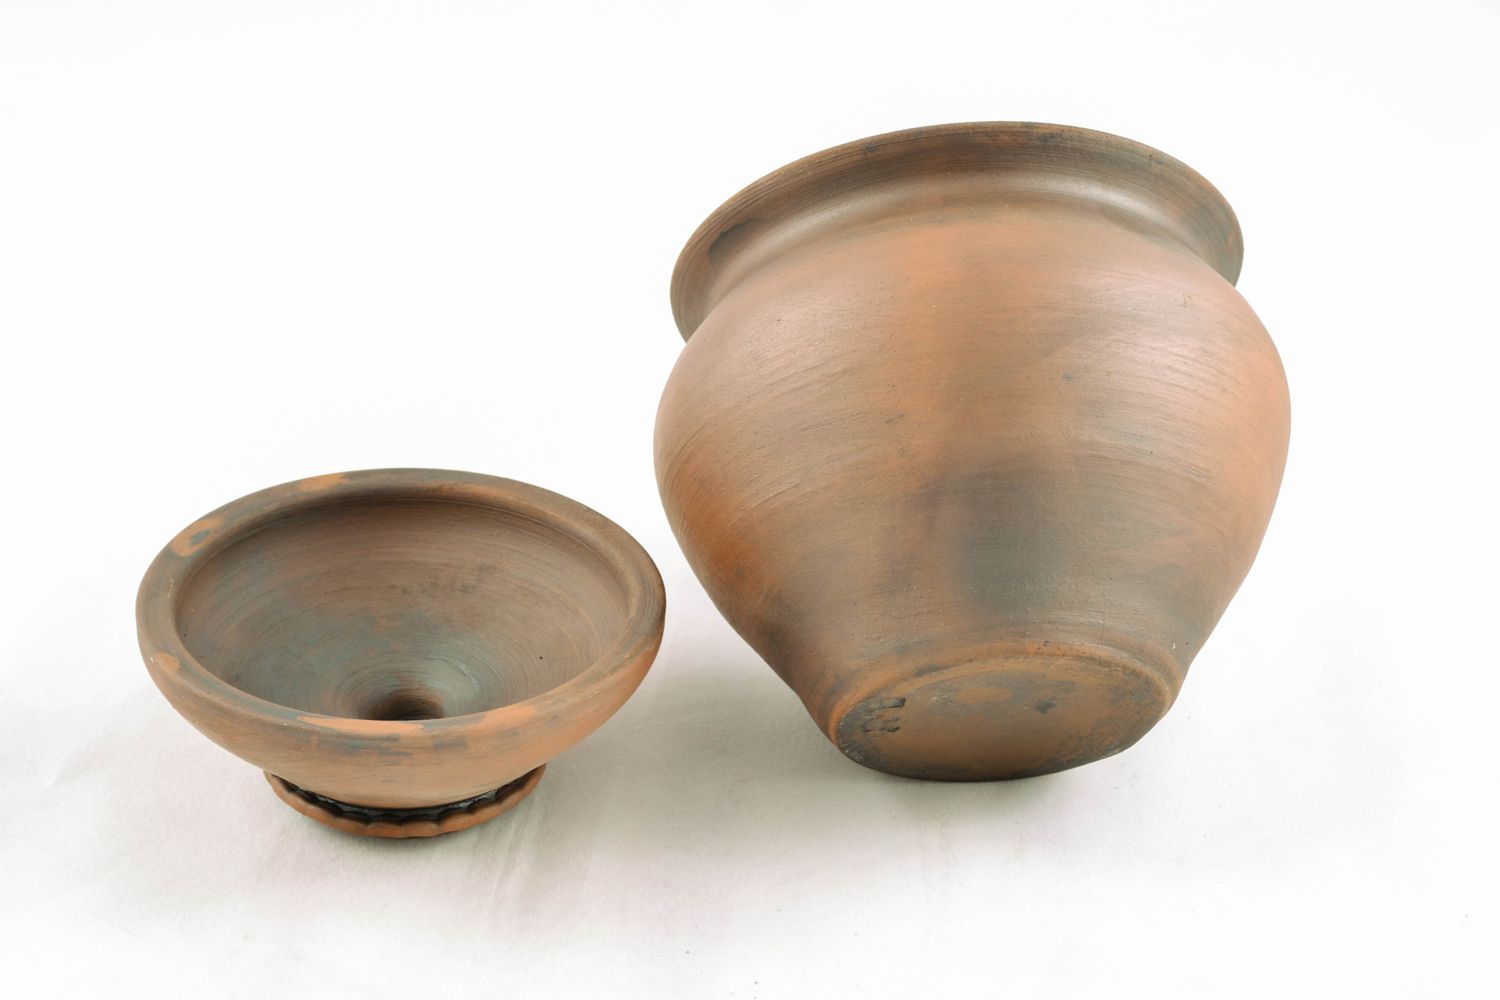 Handmade ceramic pot for baking 1 liter photo 5